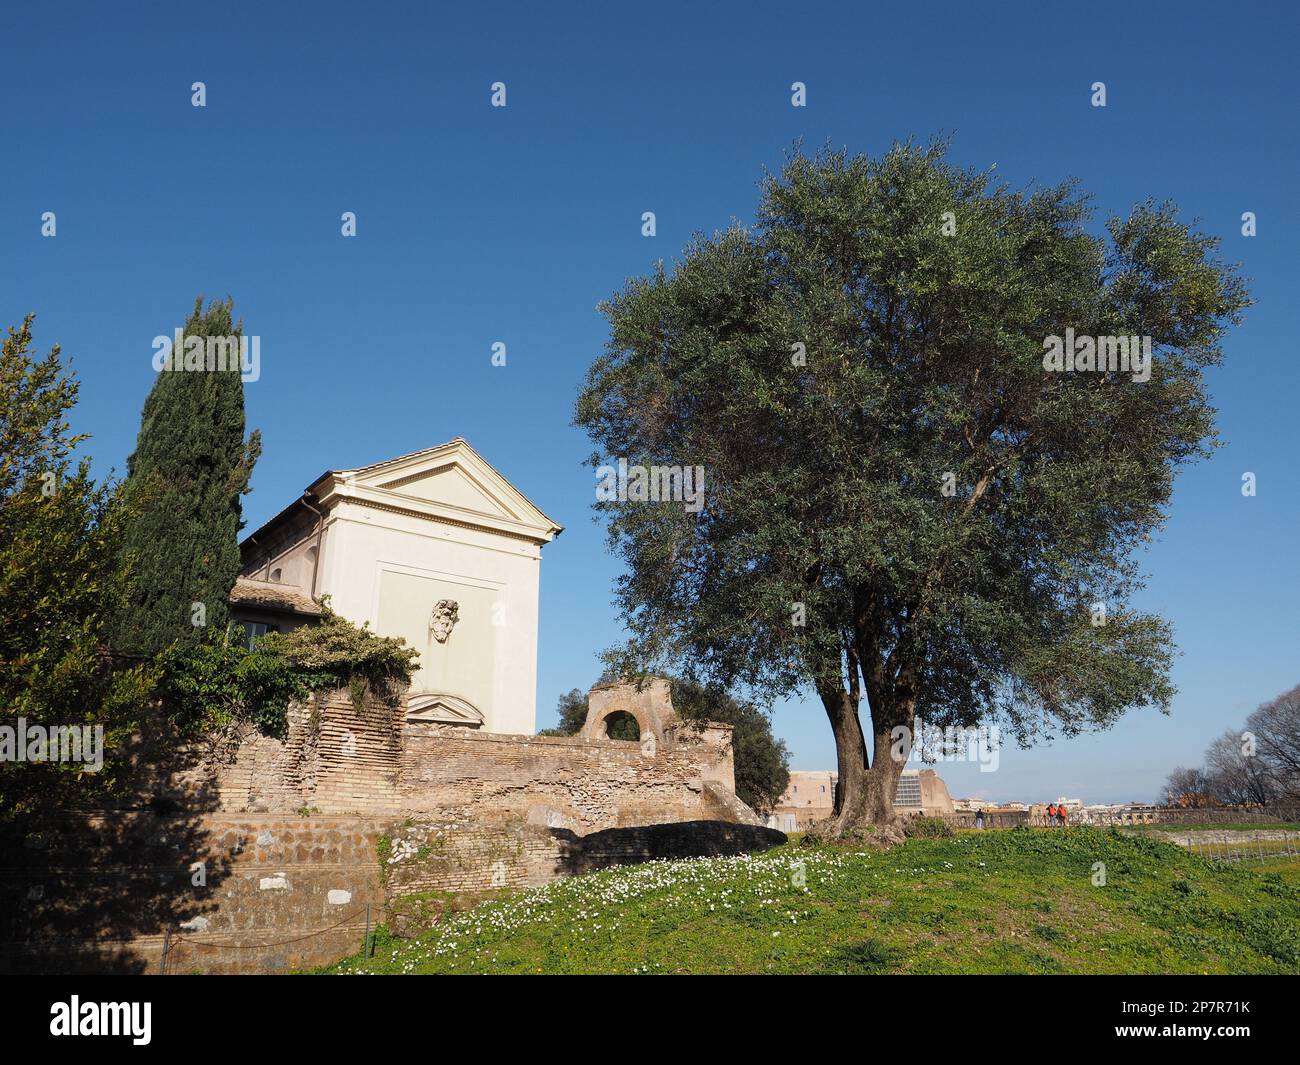 Sul colle Palatino di Roma si trovano molti ulivi, alcuni dei quali molto vecchi. Roma, Italia Foto Stock